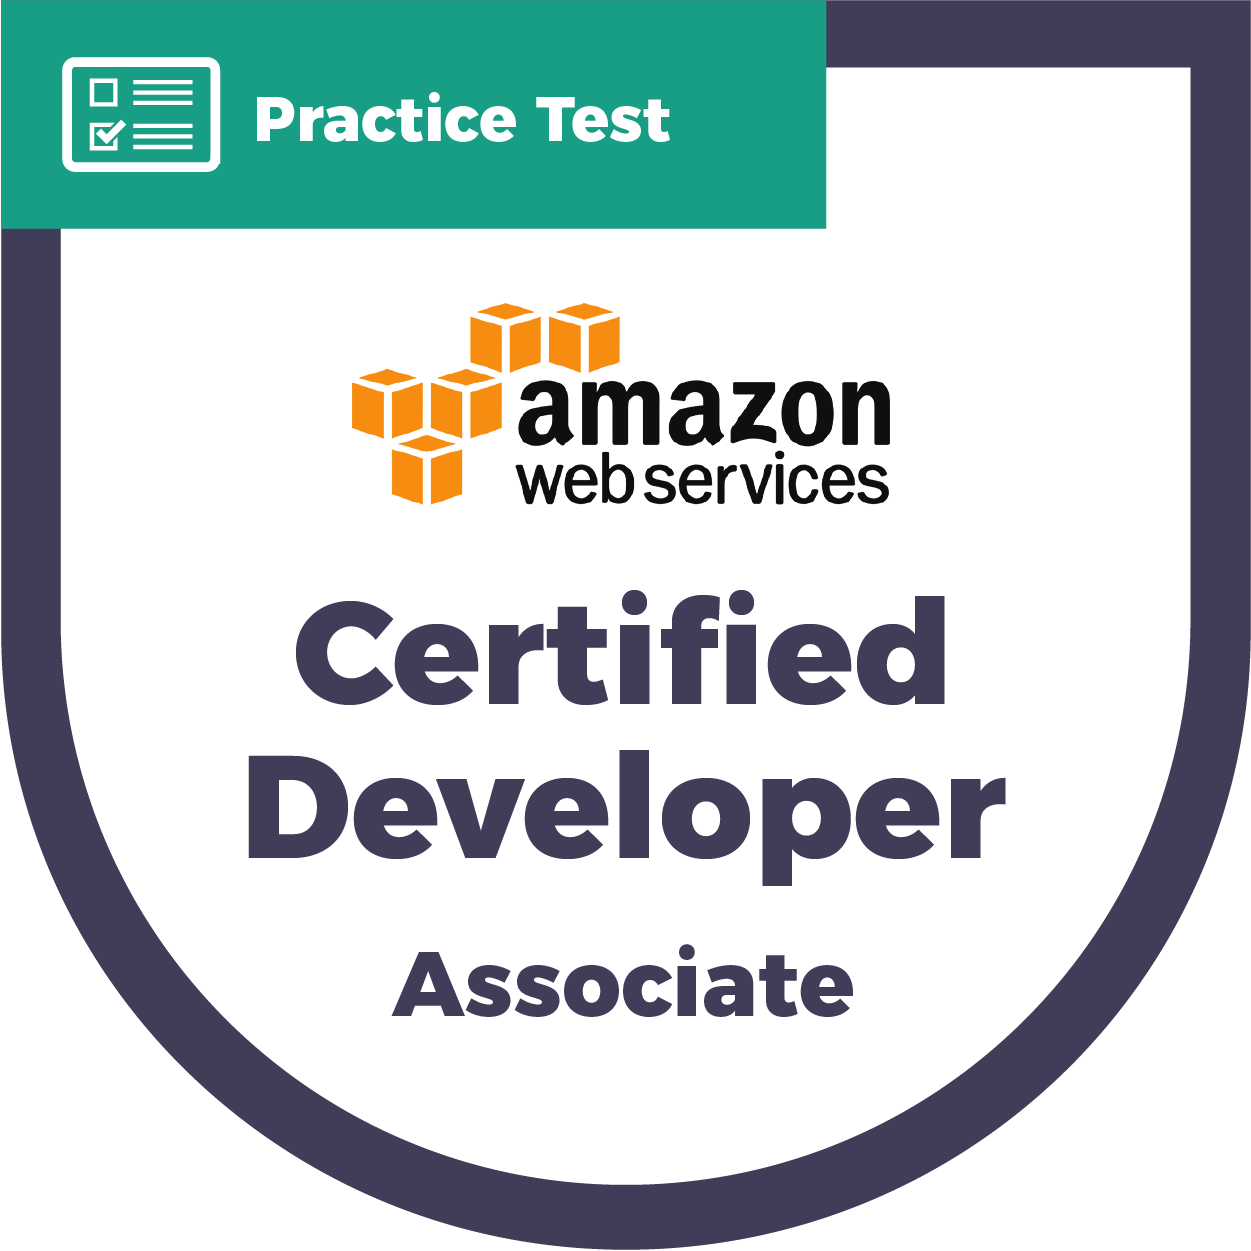 DVA-C01 AWS Certified Developer - Associate | CyberVista Practice Test